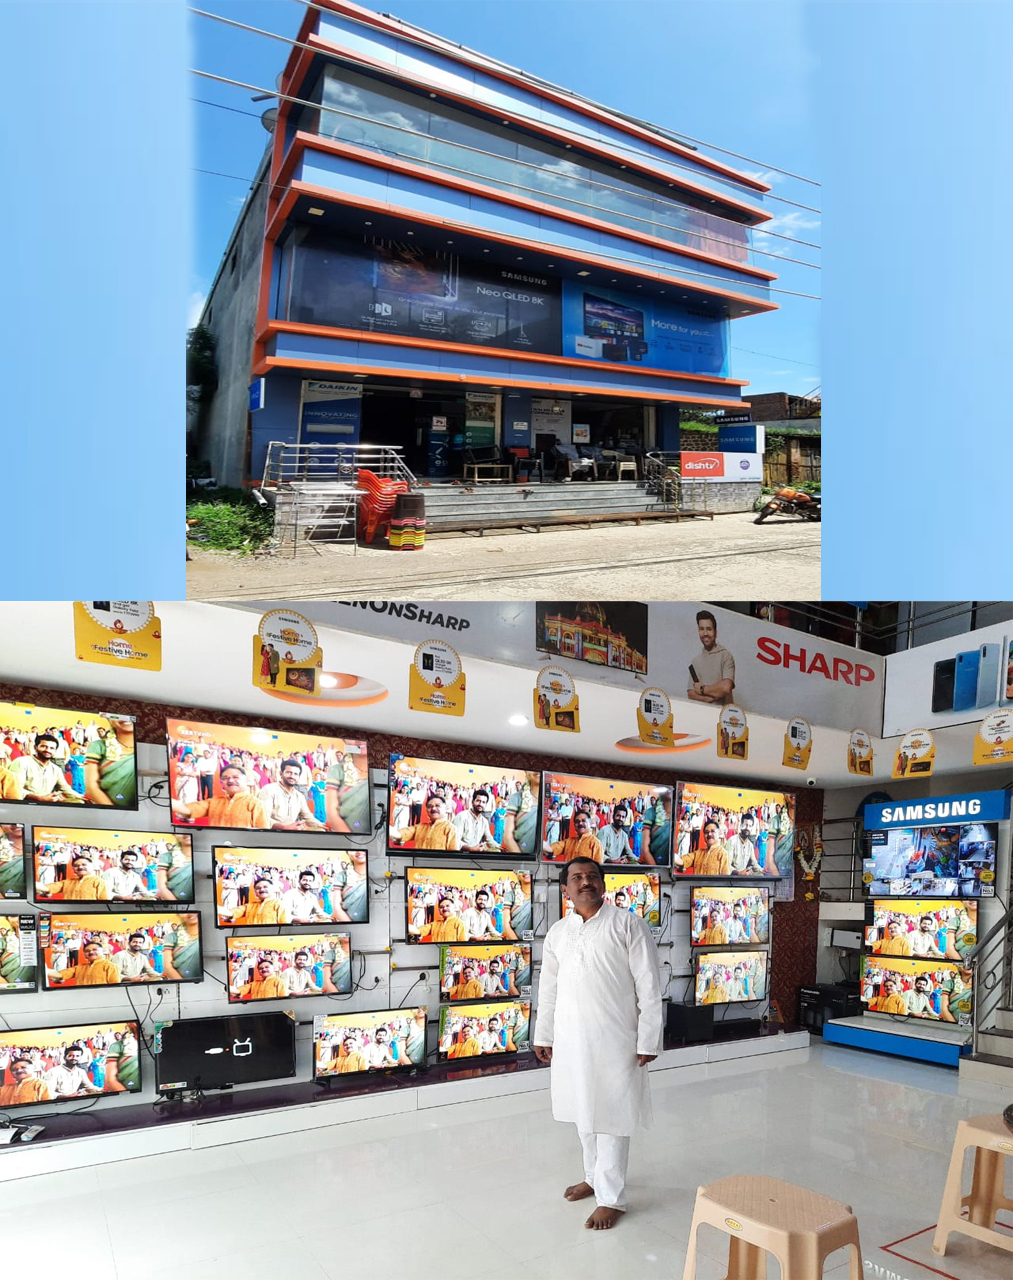 मुळीक इलेक्ट्रॉनिक्स व मोबाईल शॉपी चे केदार फर्निचर व स्टील भांडी सेंटर| SolapurMall.com